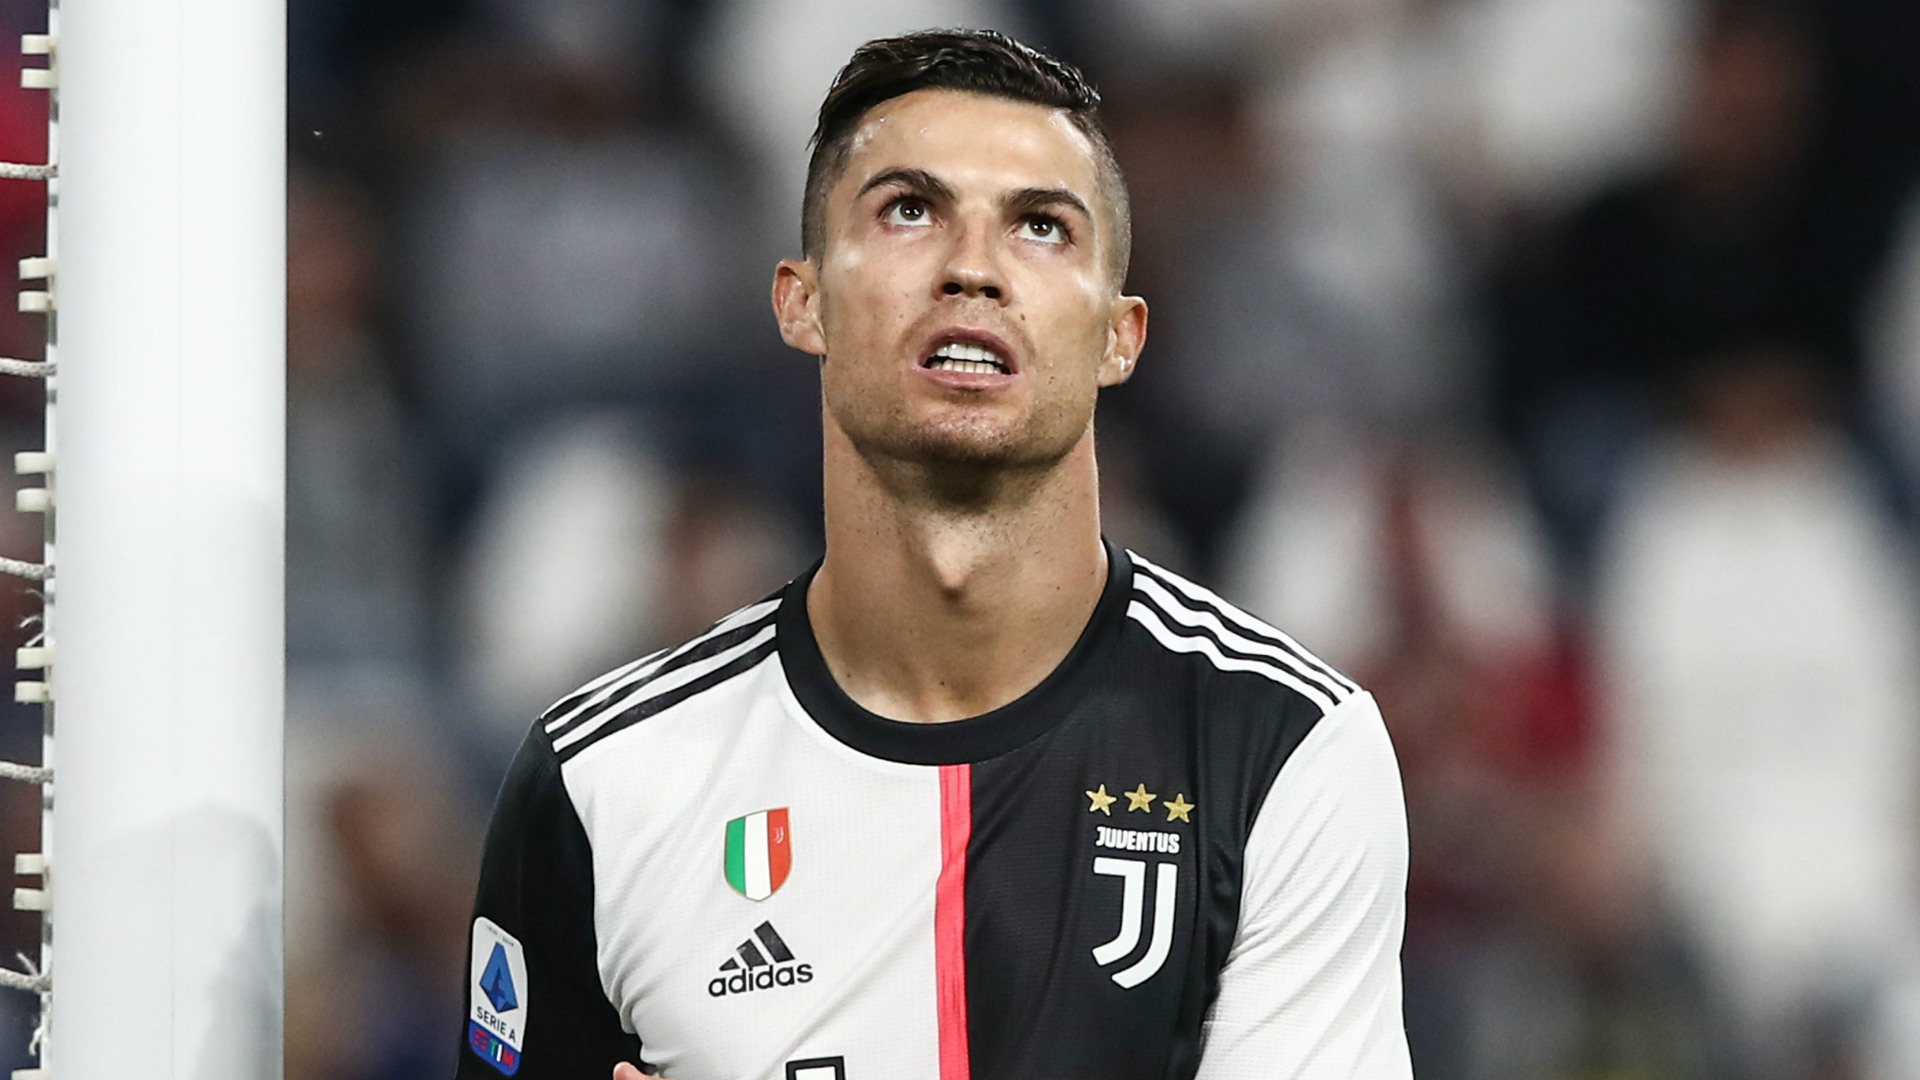 La Juventus de Turin dément pour Cristiano Ronaldo